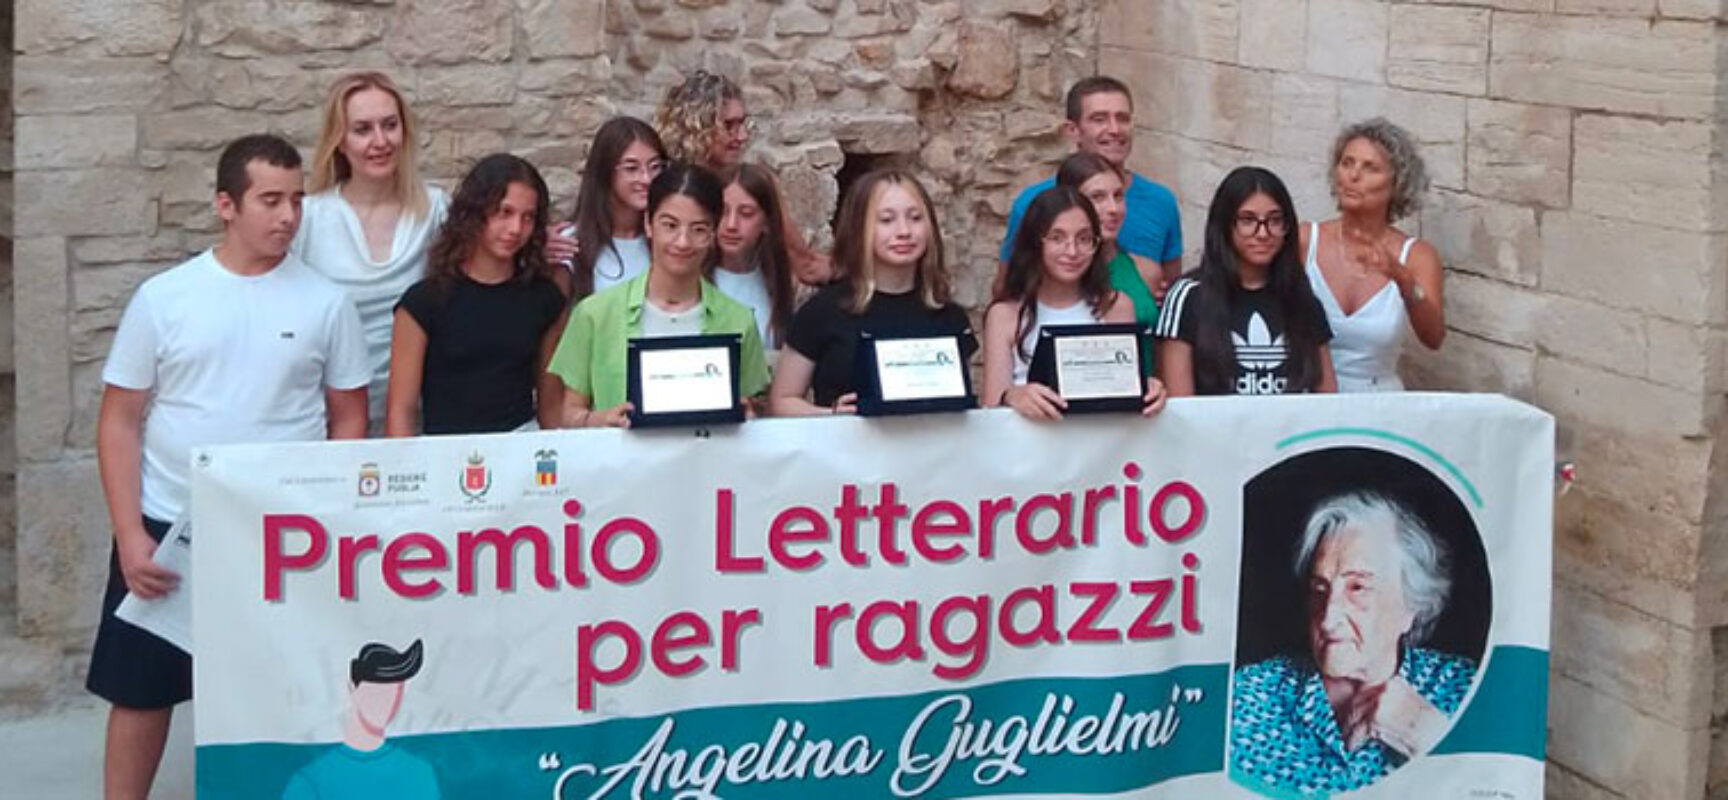 Premio Letterario “Angelina Guglielmi”, i nomi dei vincitori